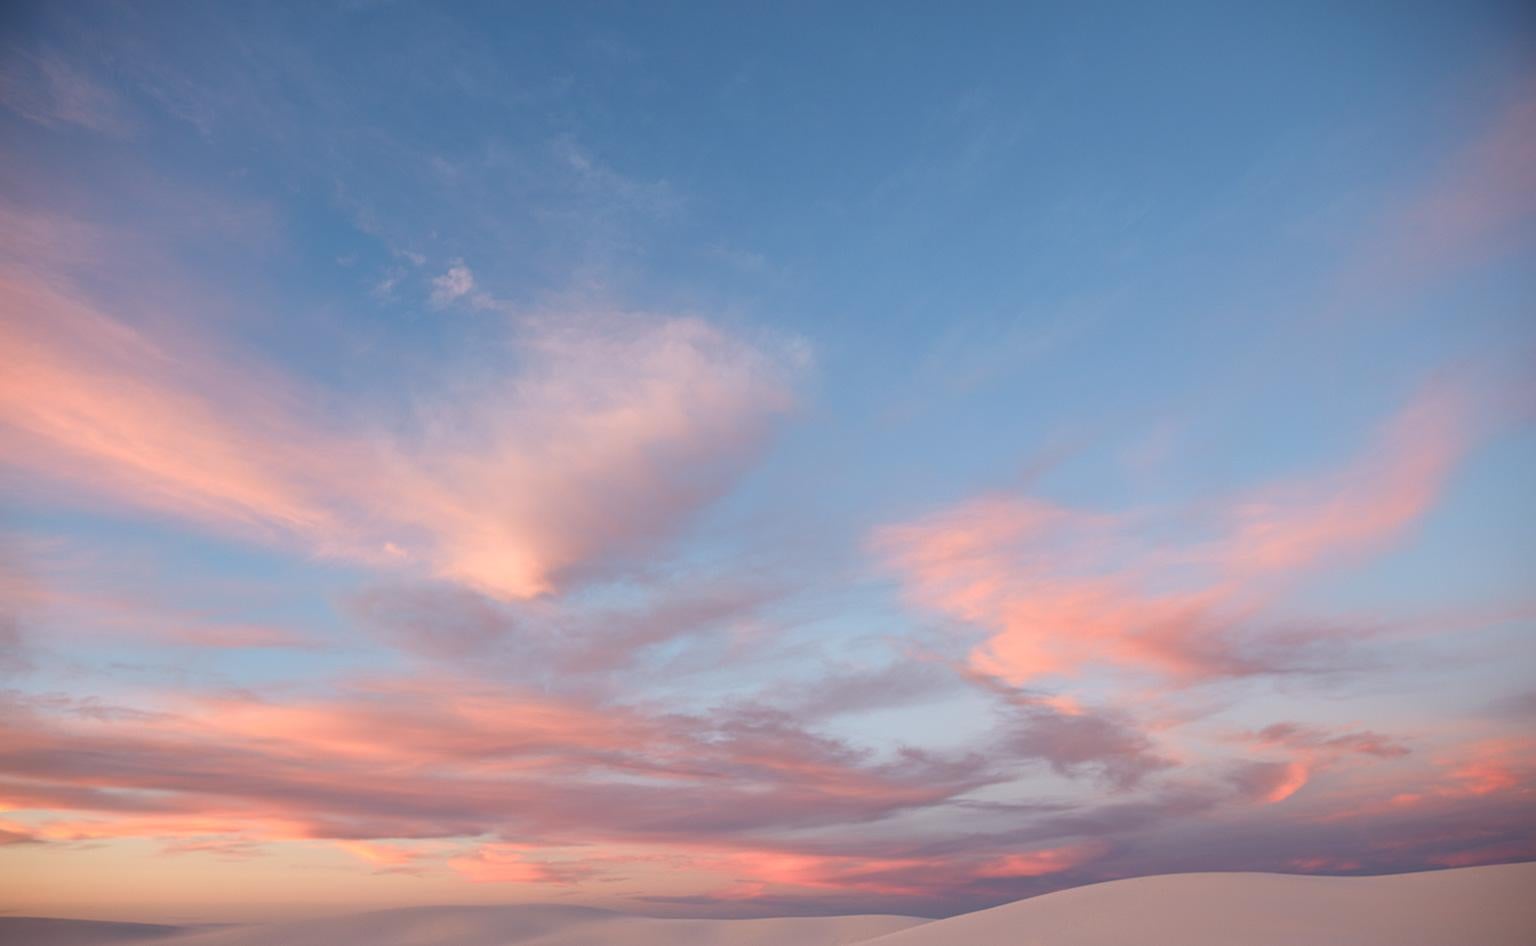 Frank Schott Abstract Photograph – Cloud Study VI – großformatige Fotografie einer dramatischen motherochromen Wolkenlandschaft im Himmel